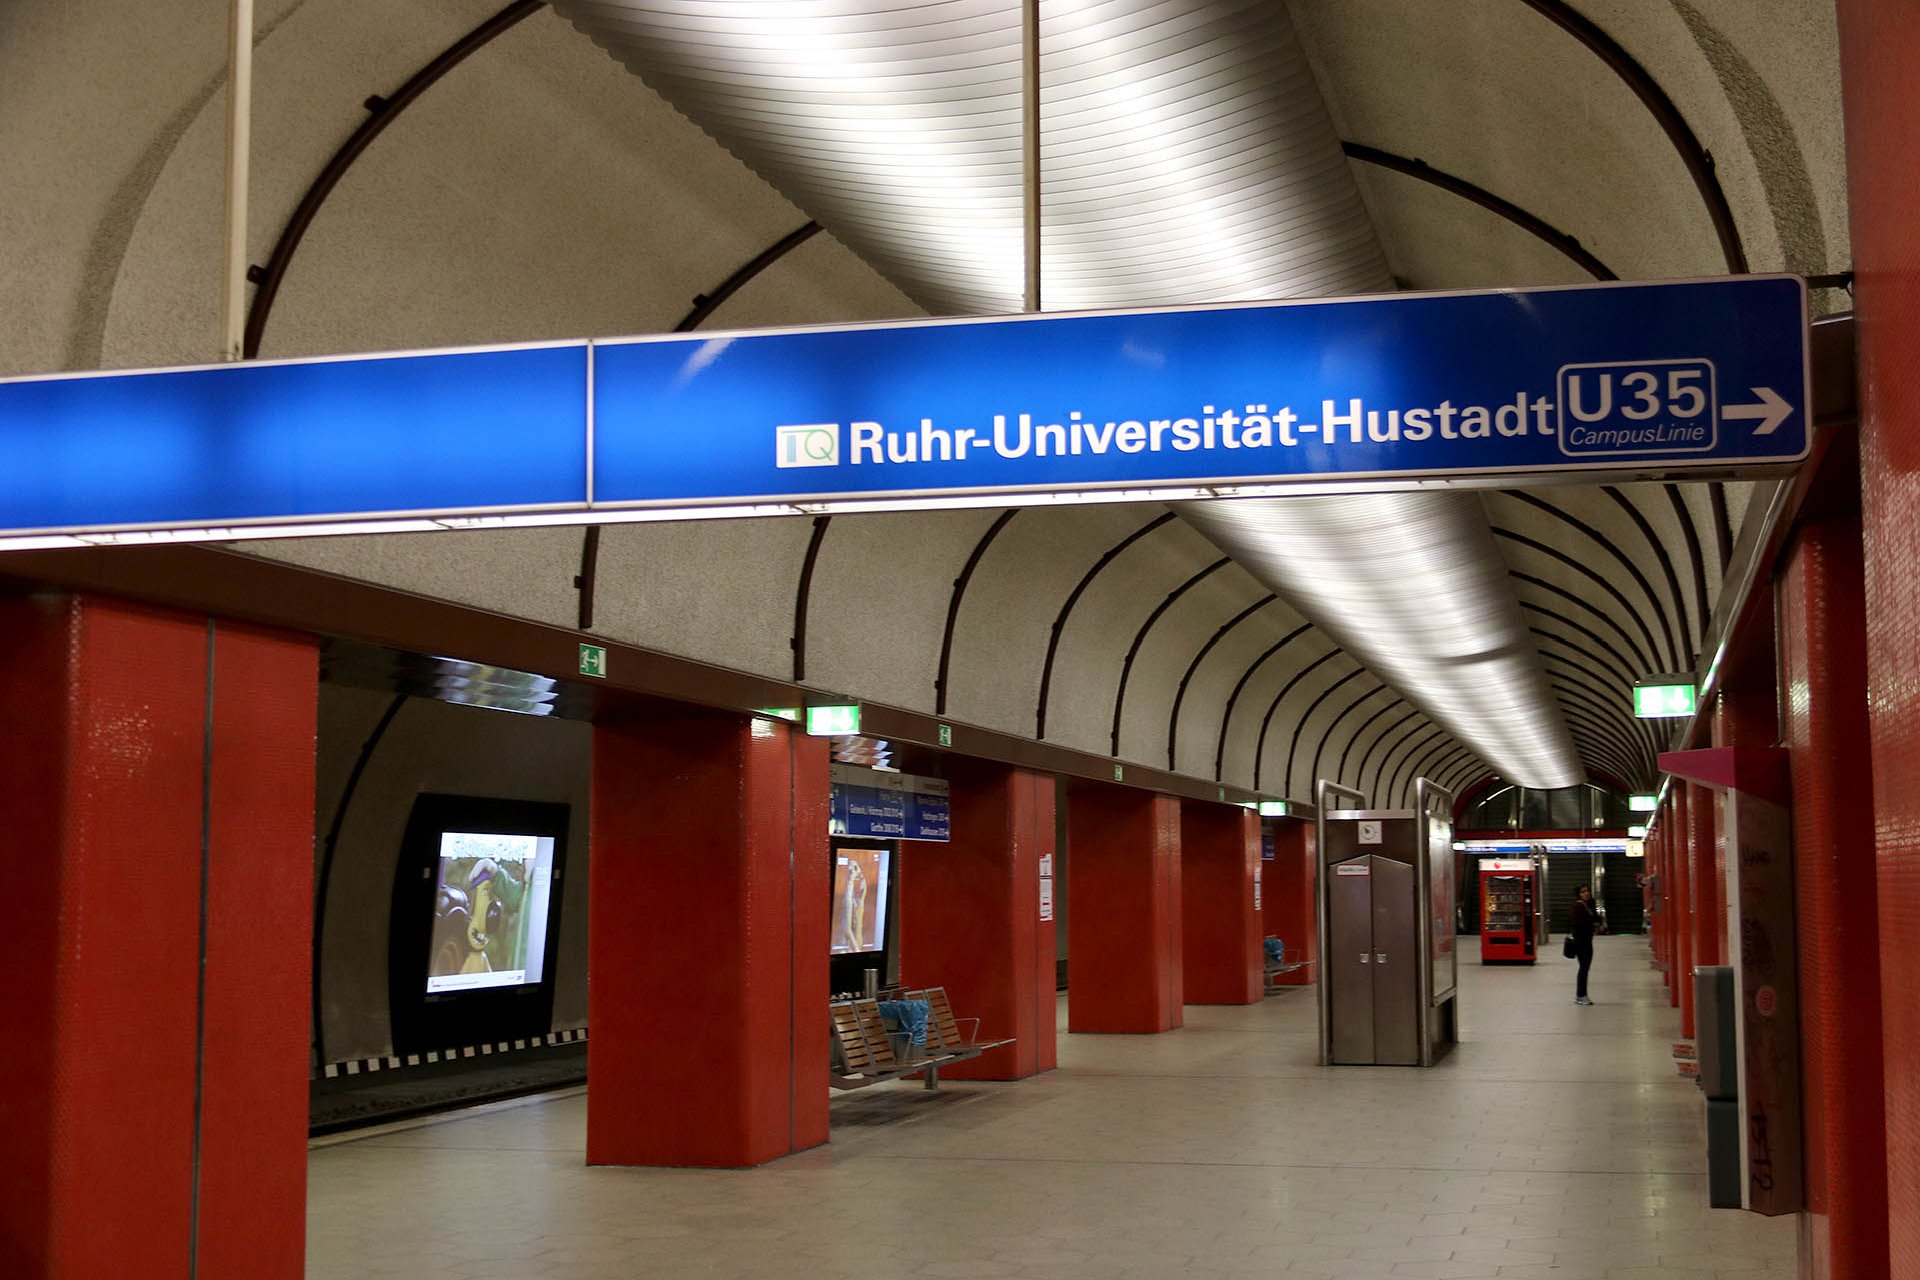 8988_52 Nun wechseln wir zum normalspurigen Stadtbahnnetz. We now change over to the normalgauge lightrail network.